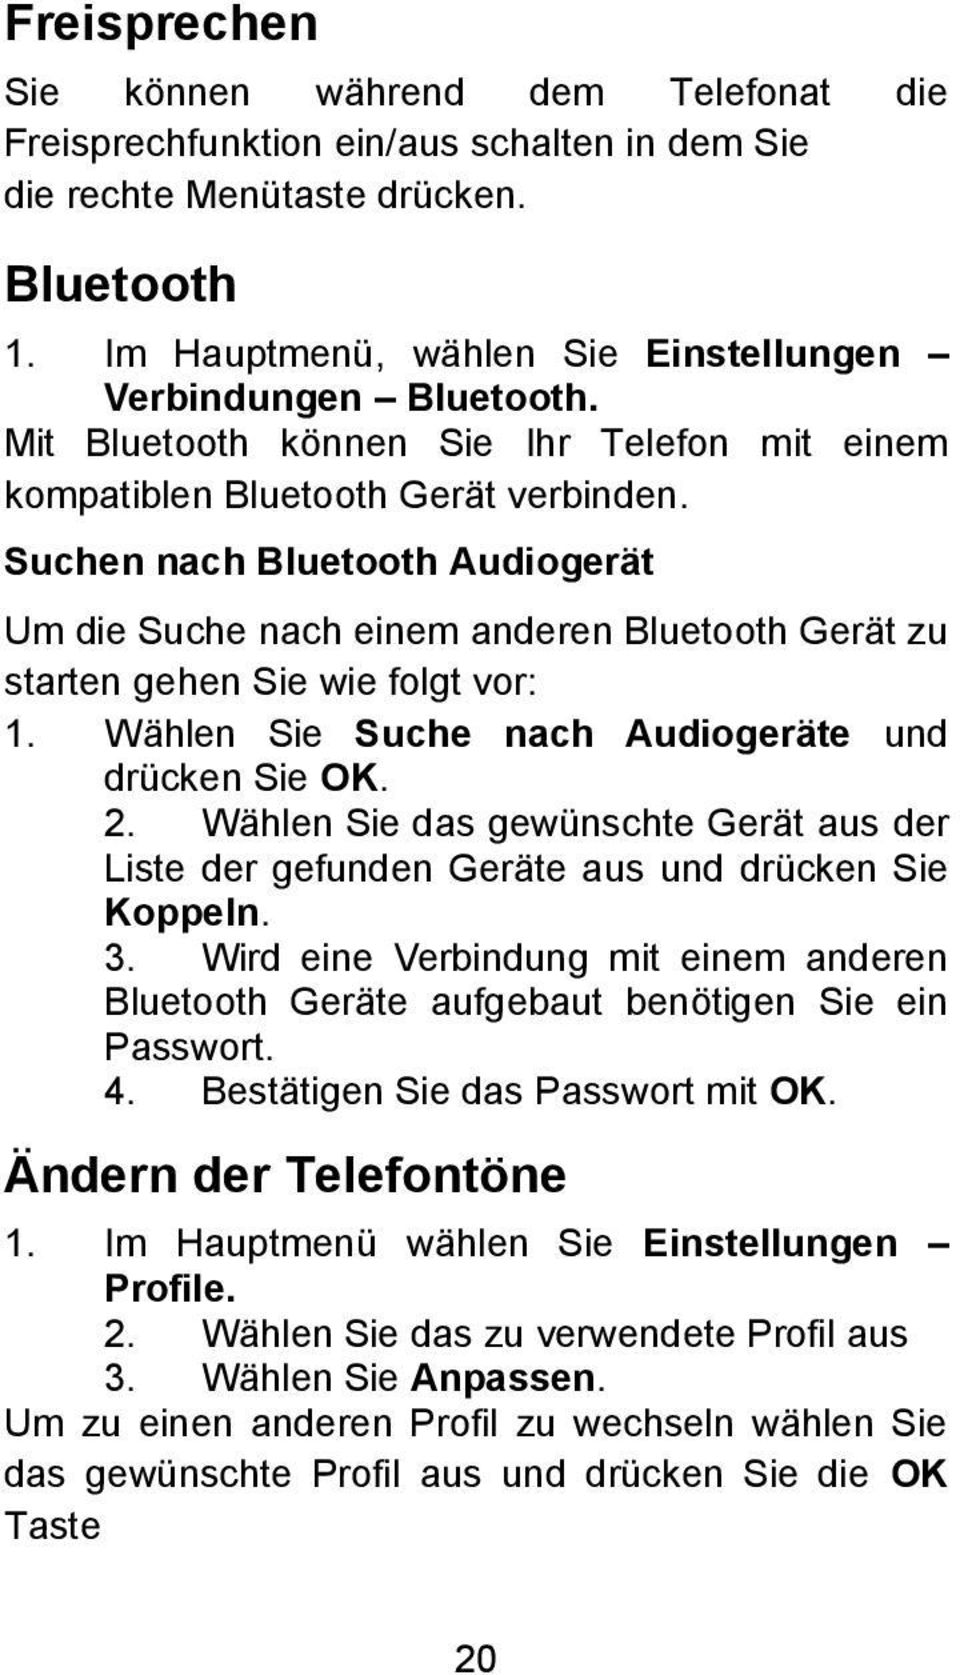 Suchen nach Bluetooth Audiogerät Um die Suche nach einem anderen Bluetooth Gerät zu starten gehen Sie wie folgt vor: 1. Wählen Sie Suche nach Audiogeräte und drücken Sie OK. 2.